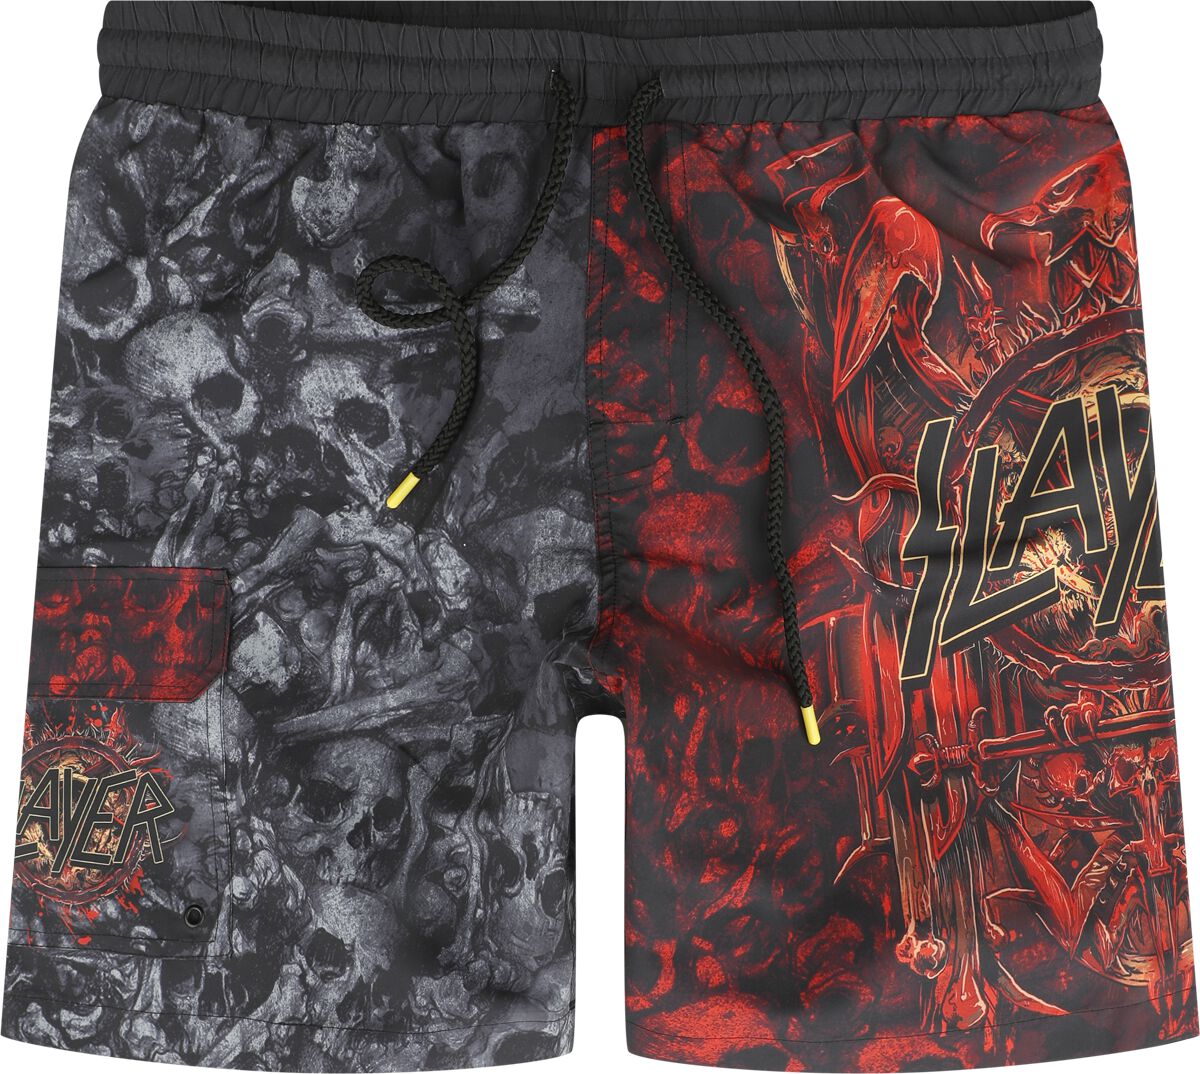 Slayer Badeshort - EMP Signature Collection - M bis 3XL - für Männer - Größe XXL - multicolor  - EMP exklusives Merchandise!